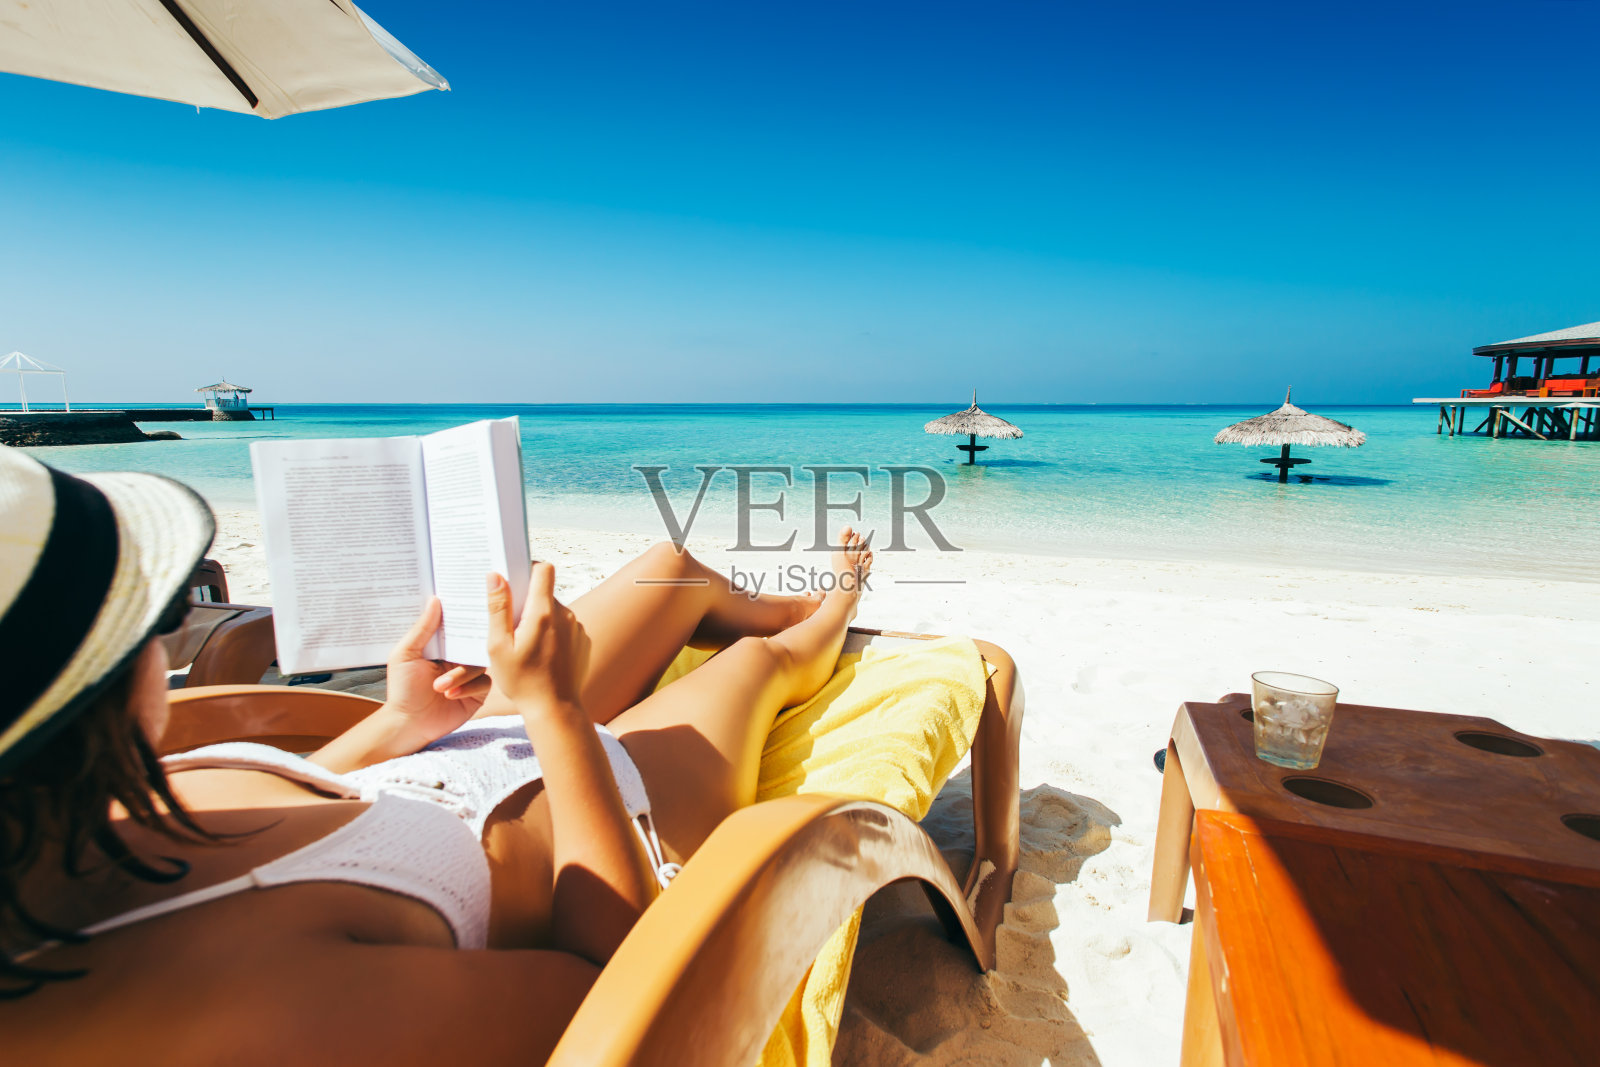 一名女子在热带岛屿的阳伞下躺在日光浴床上看书照片摄影图片